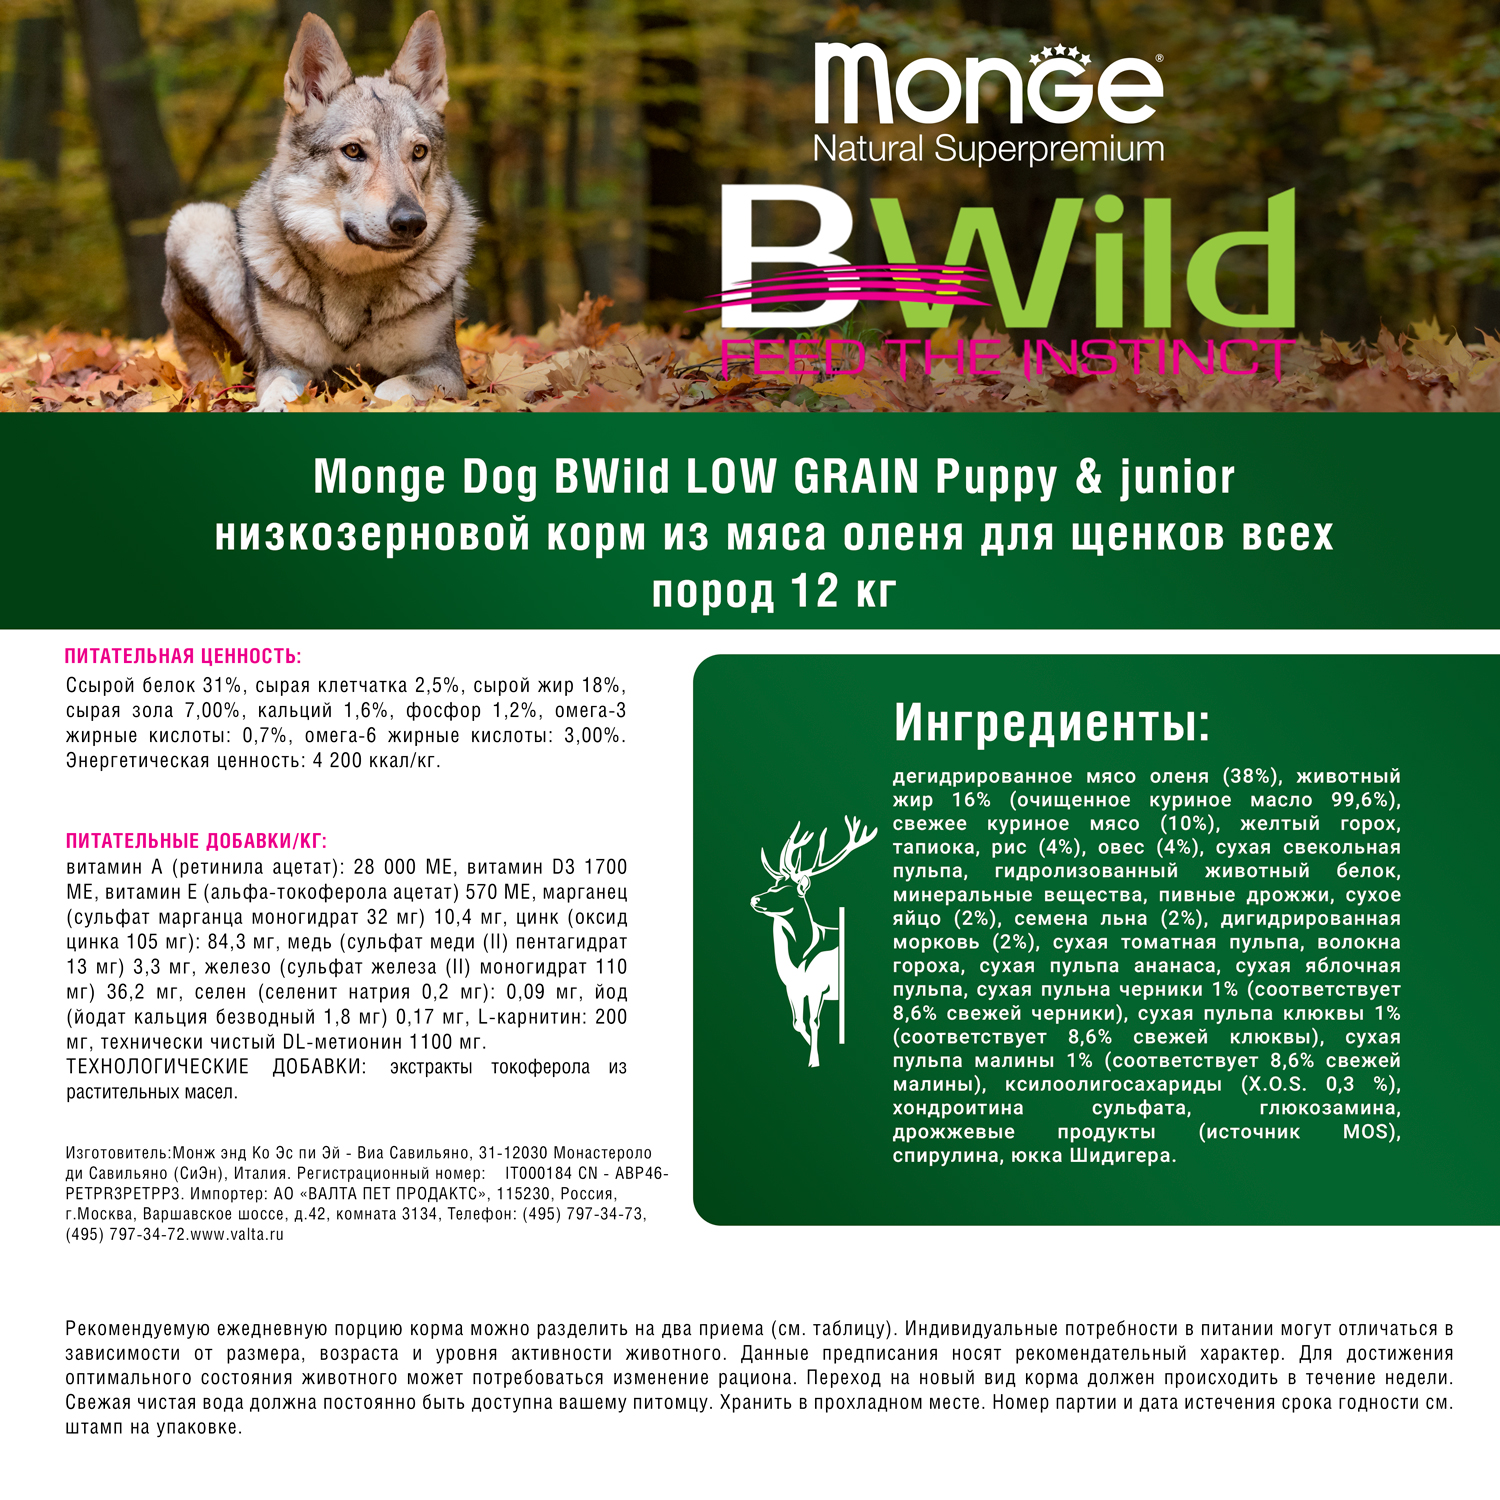 Сухой корм Monge Dog BWild LOW GRAIN Puppy & junior для щенков, низкозерновой, из мяса оленя 12 кг